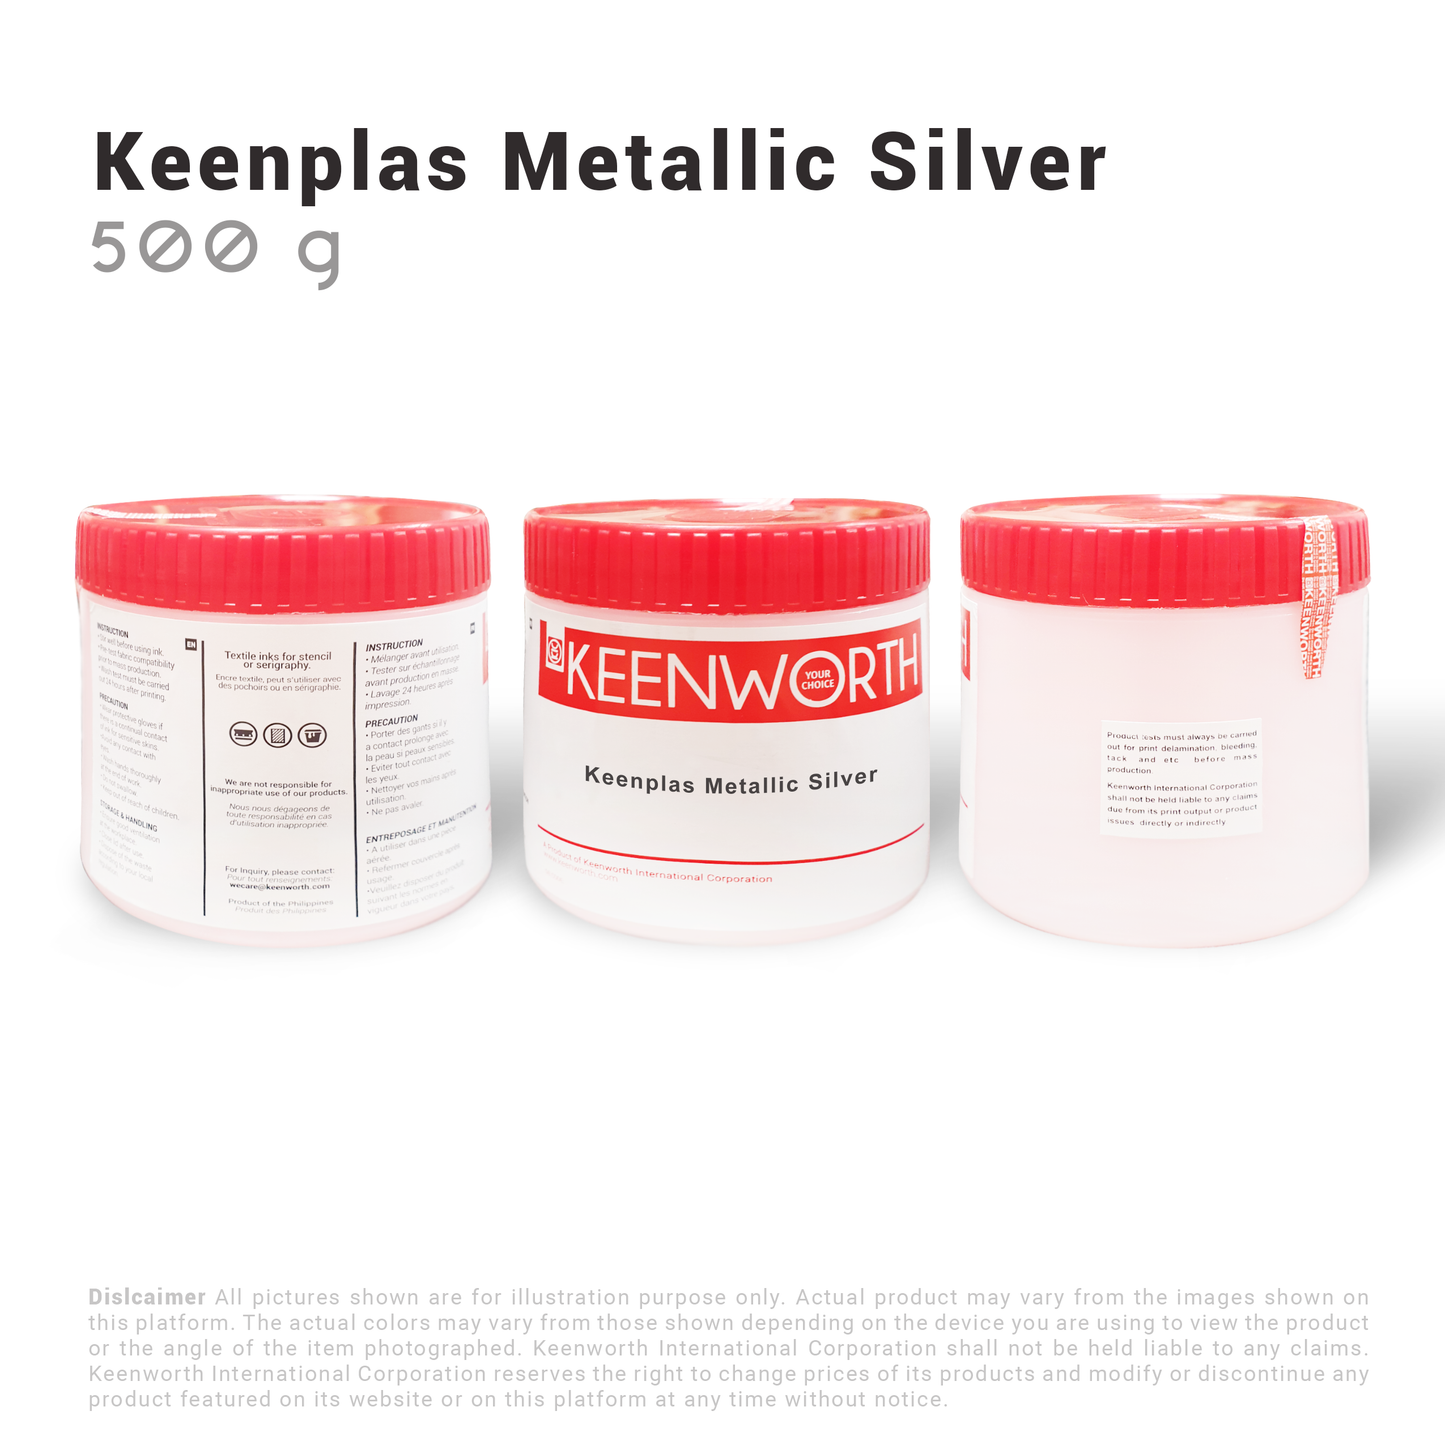 Keenplas Metallic Silver